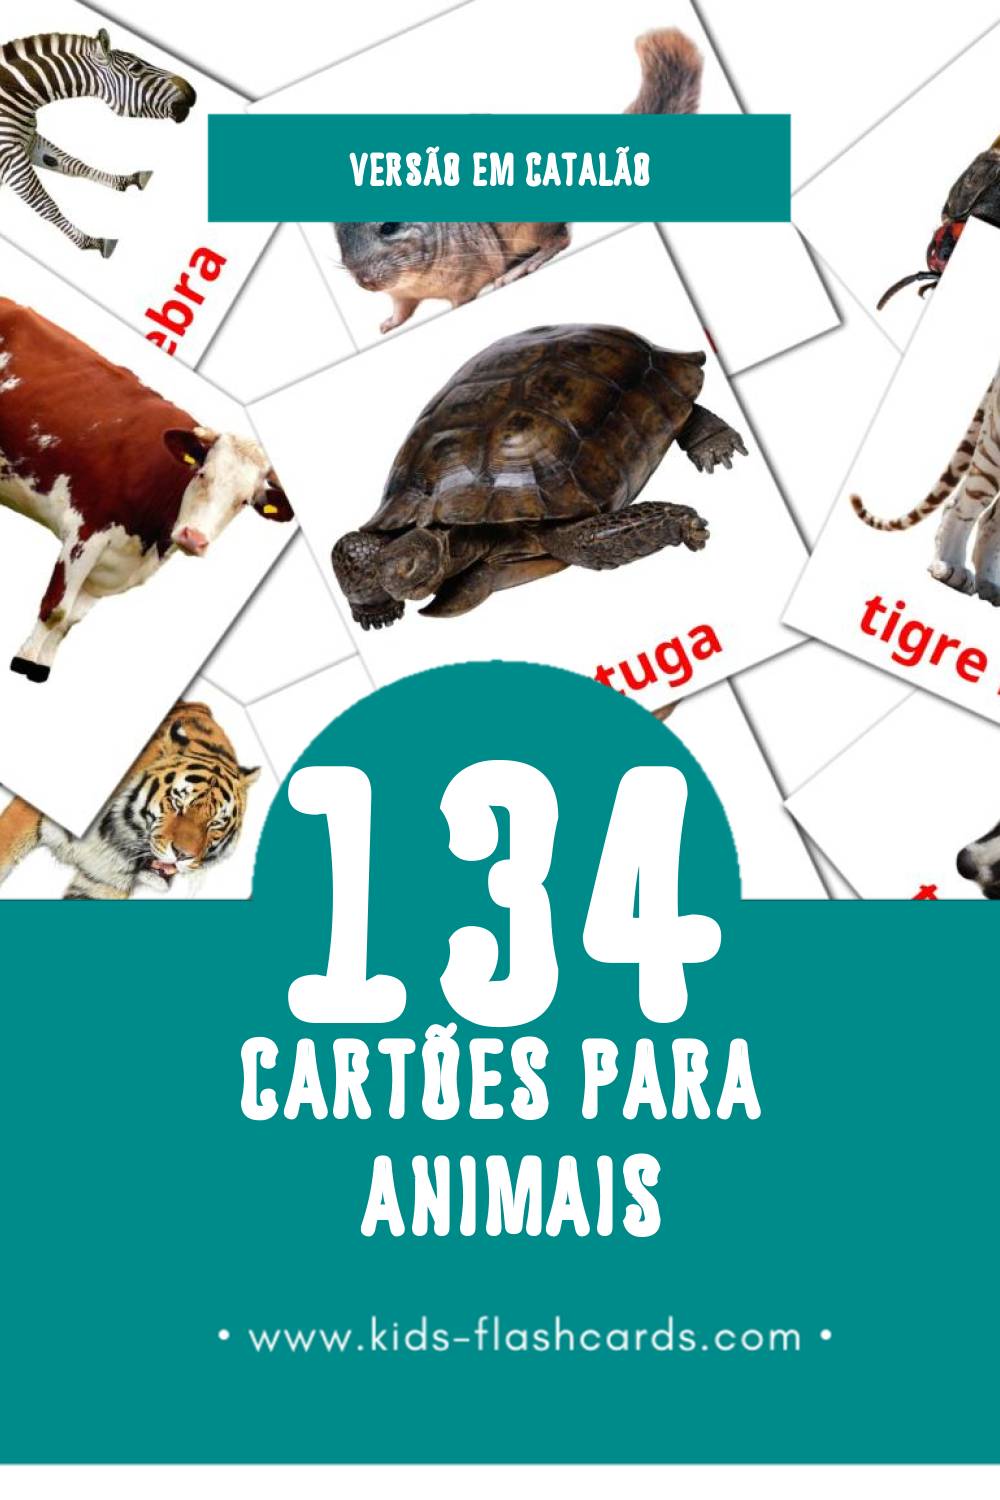 Flashcards de Animals Visuais para Toddlers (134 cartões em Catalão)